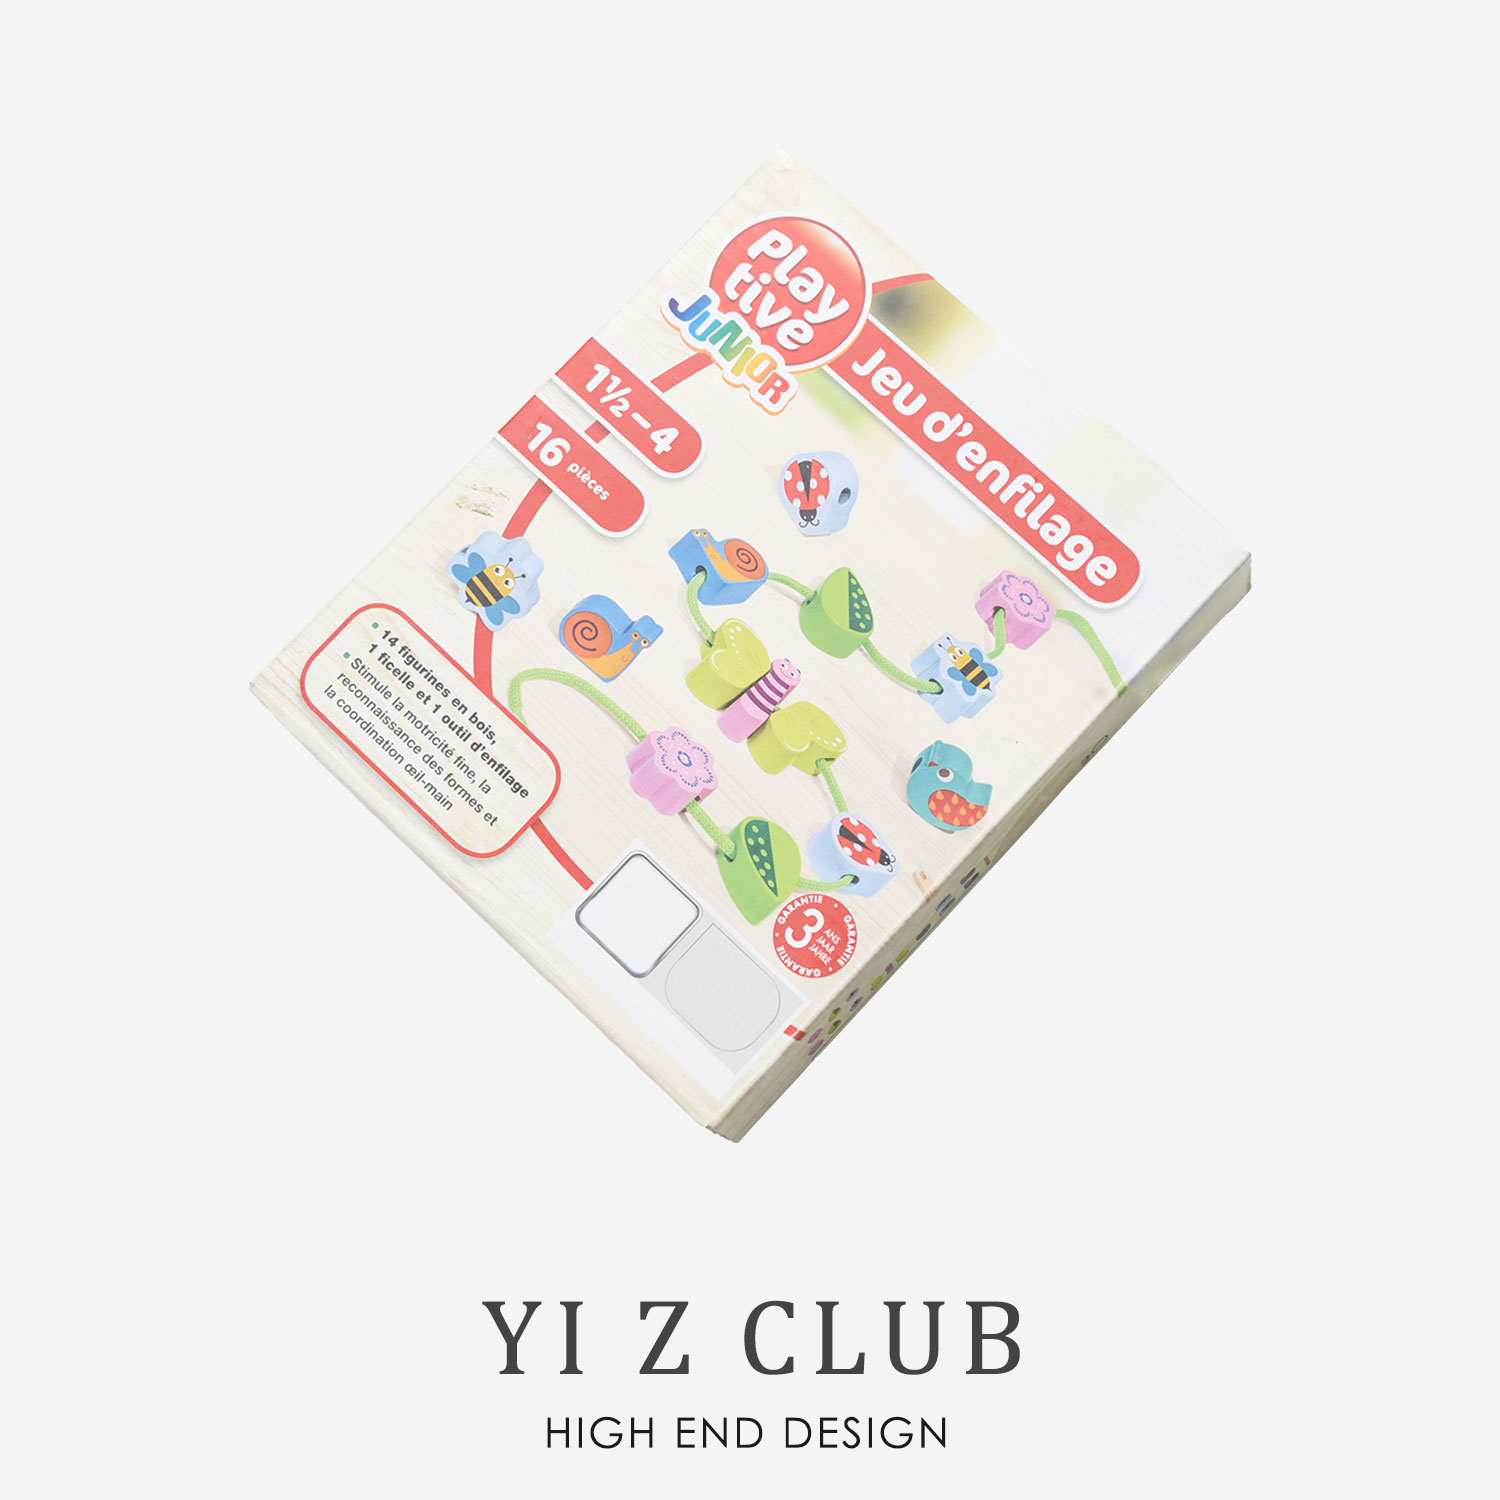 YI Z CLUB     Ʒ 1.5-4      峭 0.22-